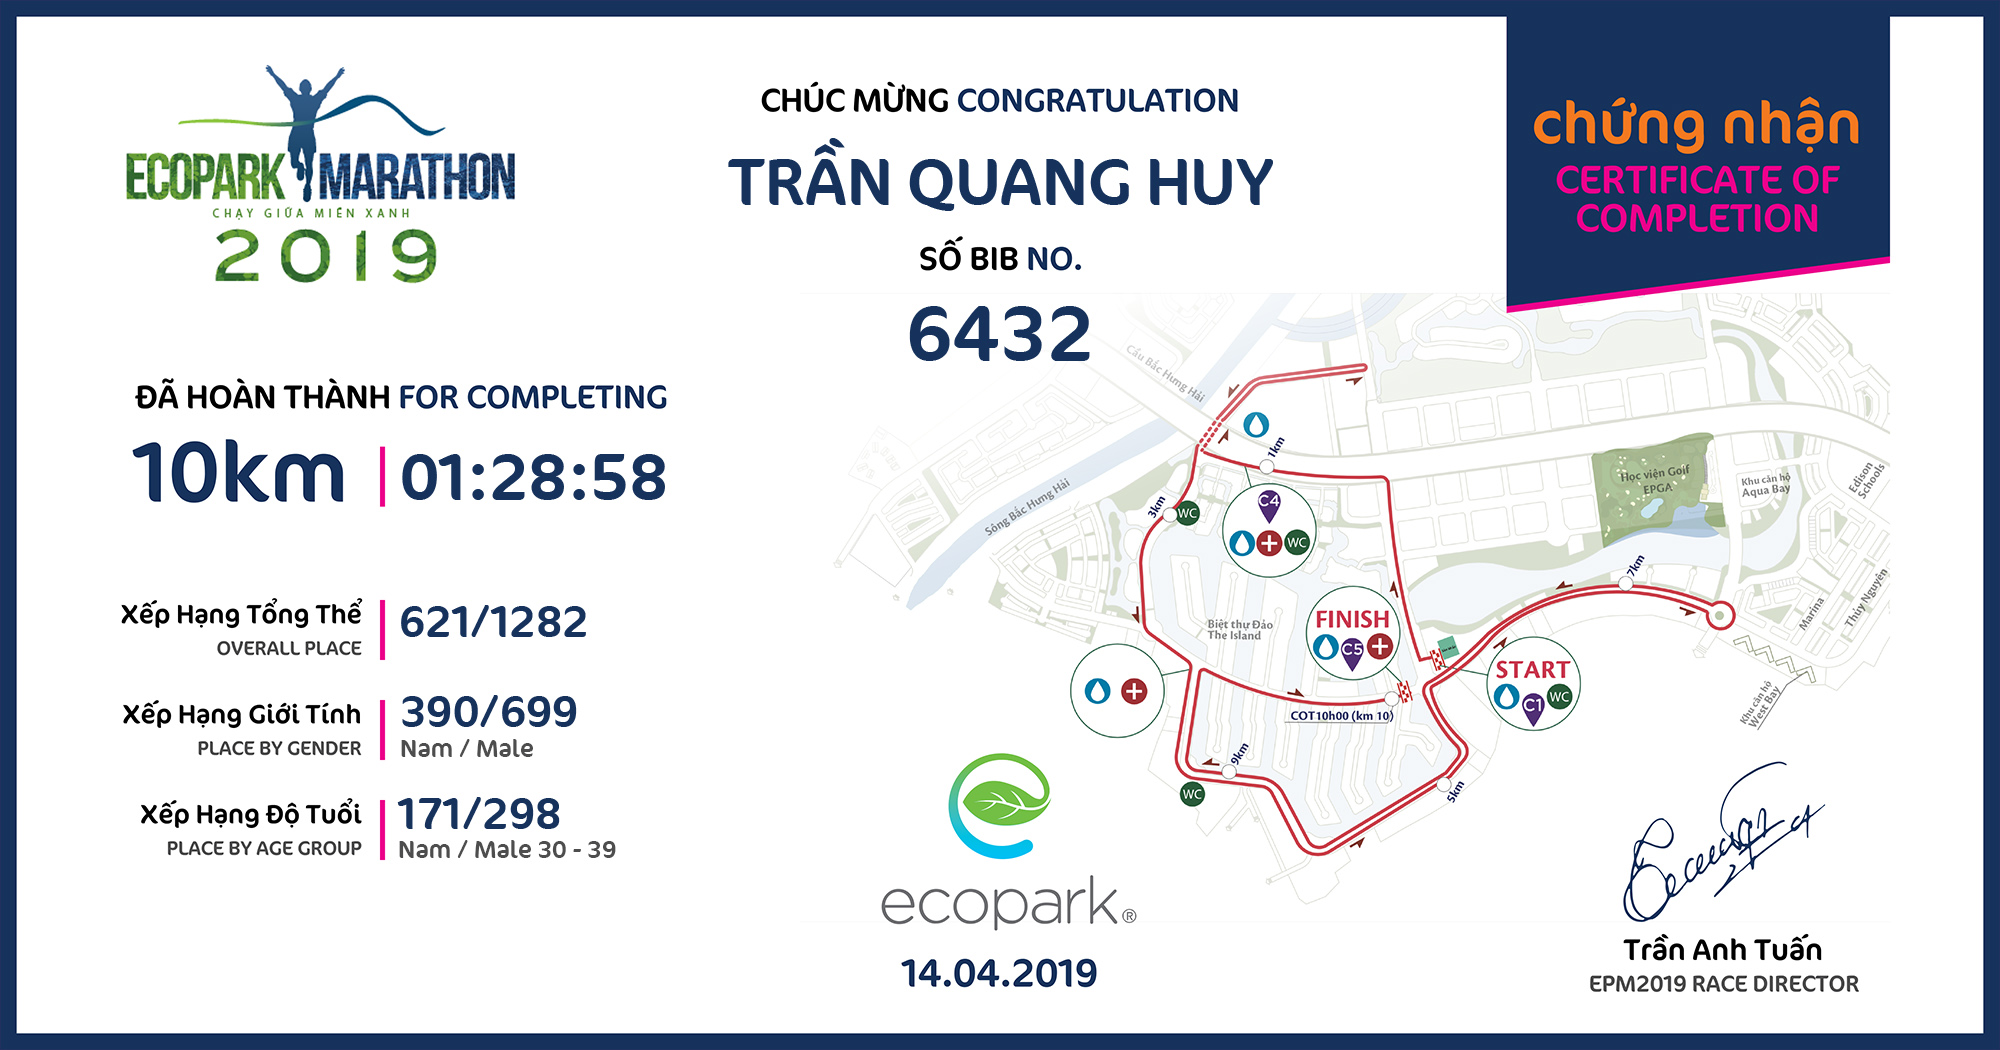 6432 - Trần Quang Huy